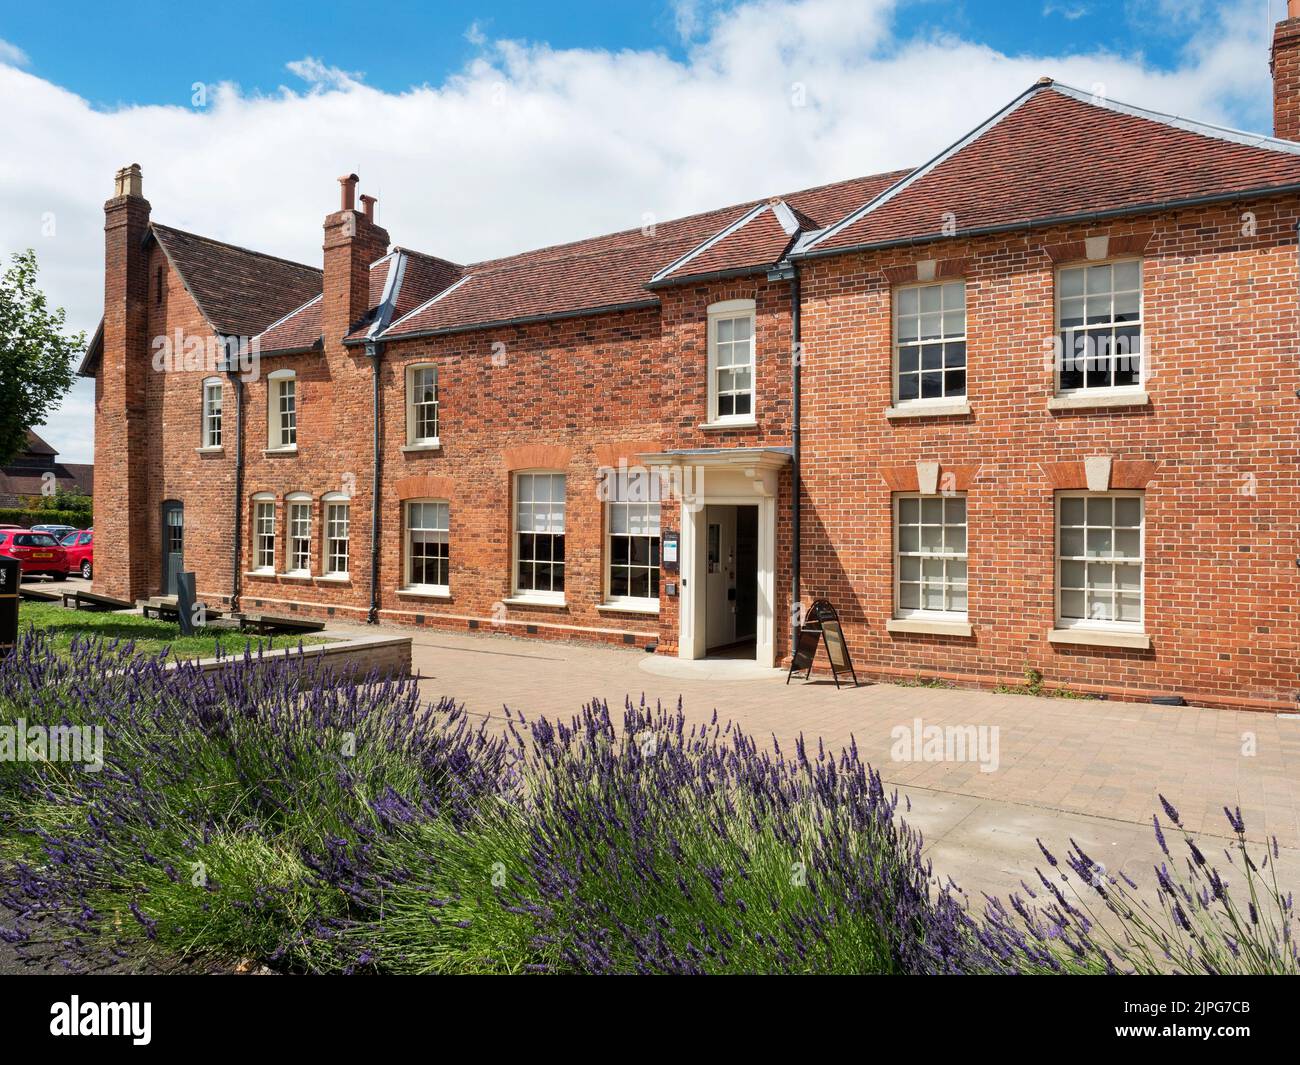 La maison des maîtres de l'hôpital St Katherines restaurée 2015 aujourd'hui Bibliothèque Ledbury Ledbury Herefordshire Angleterre Banque D'Images